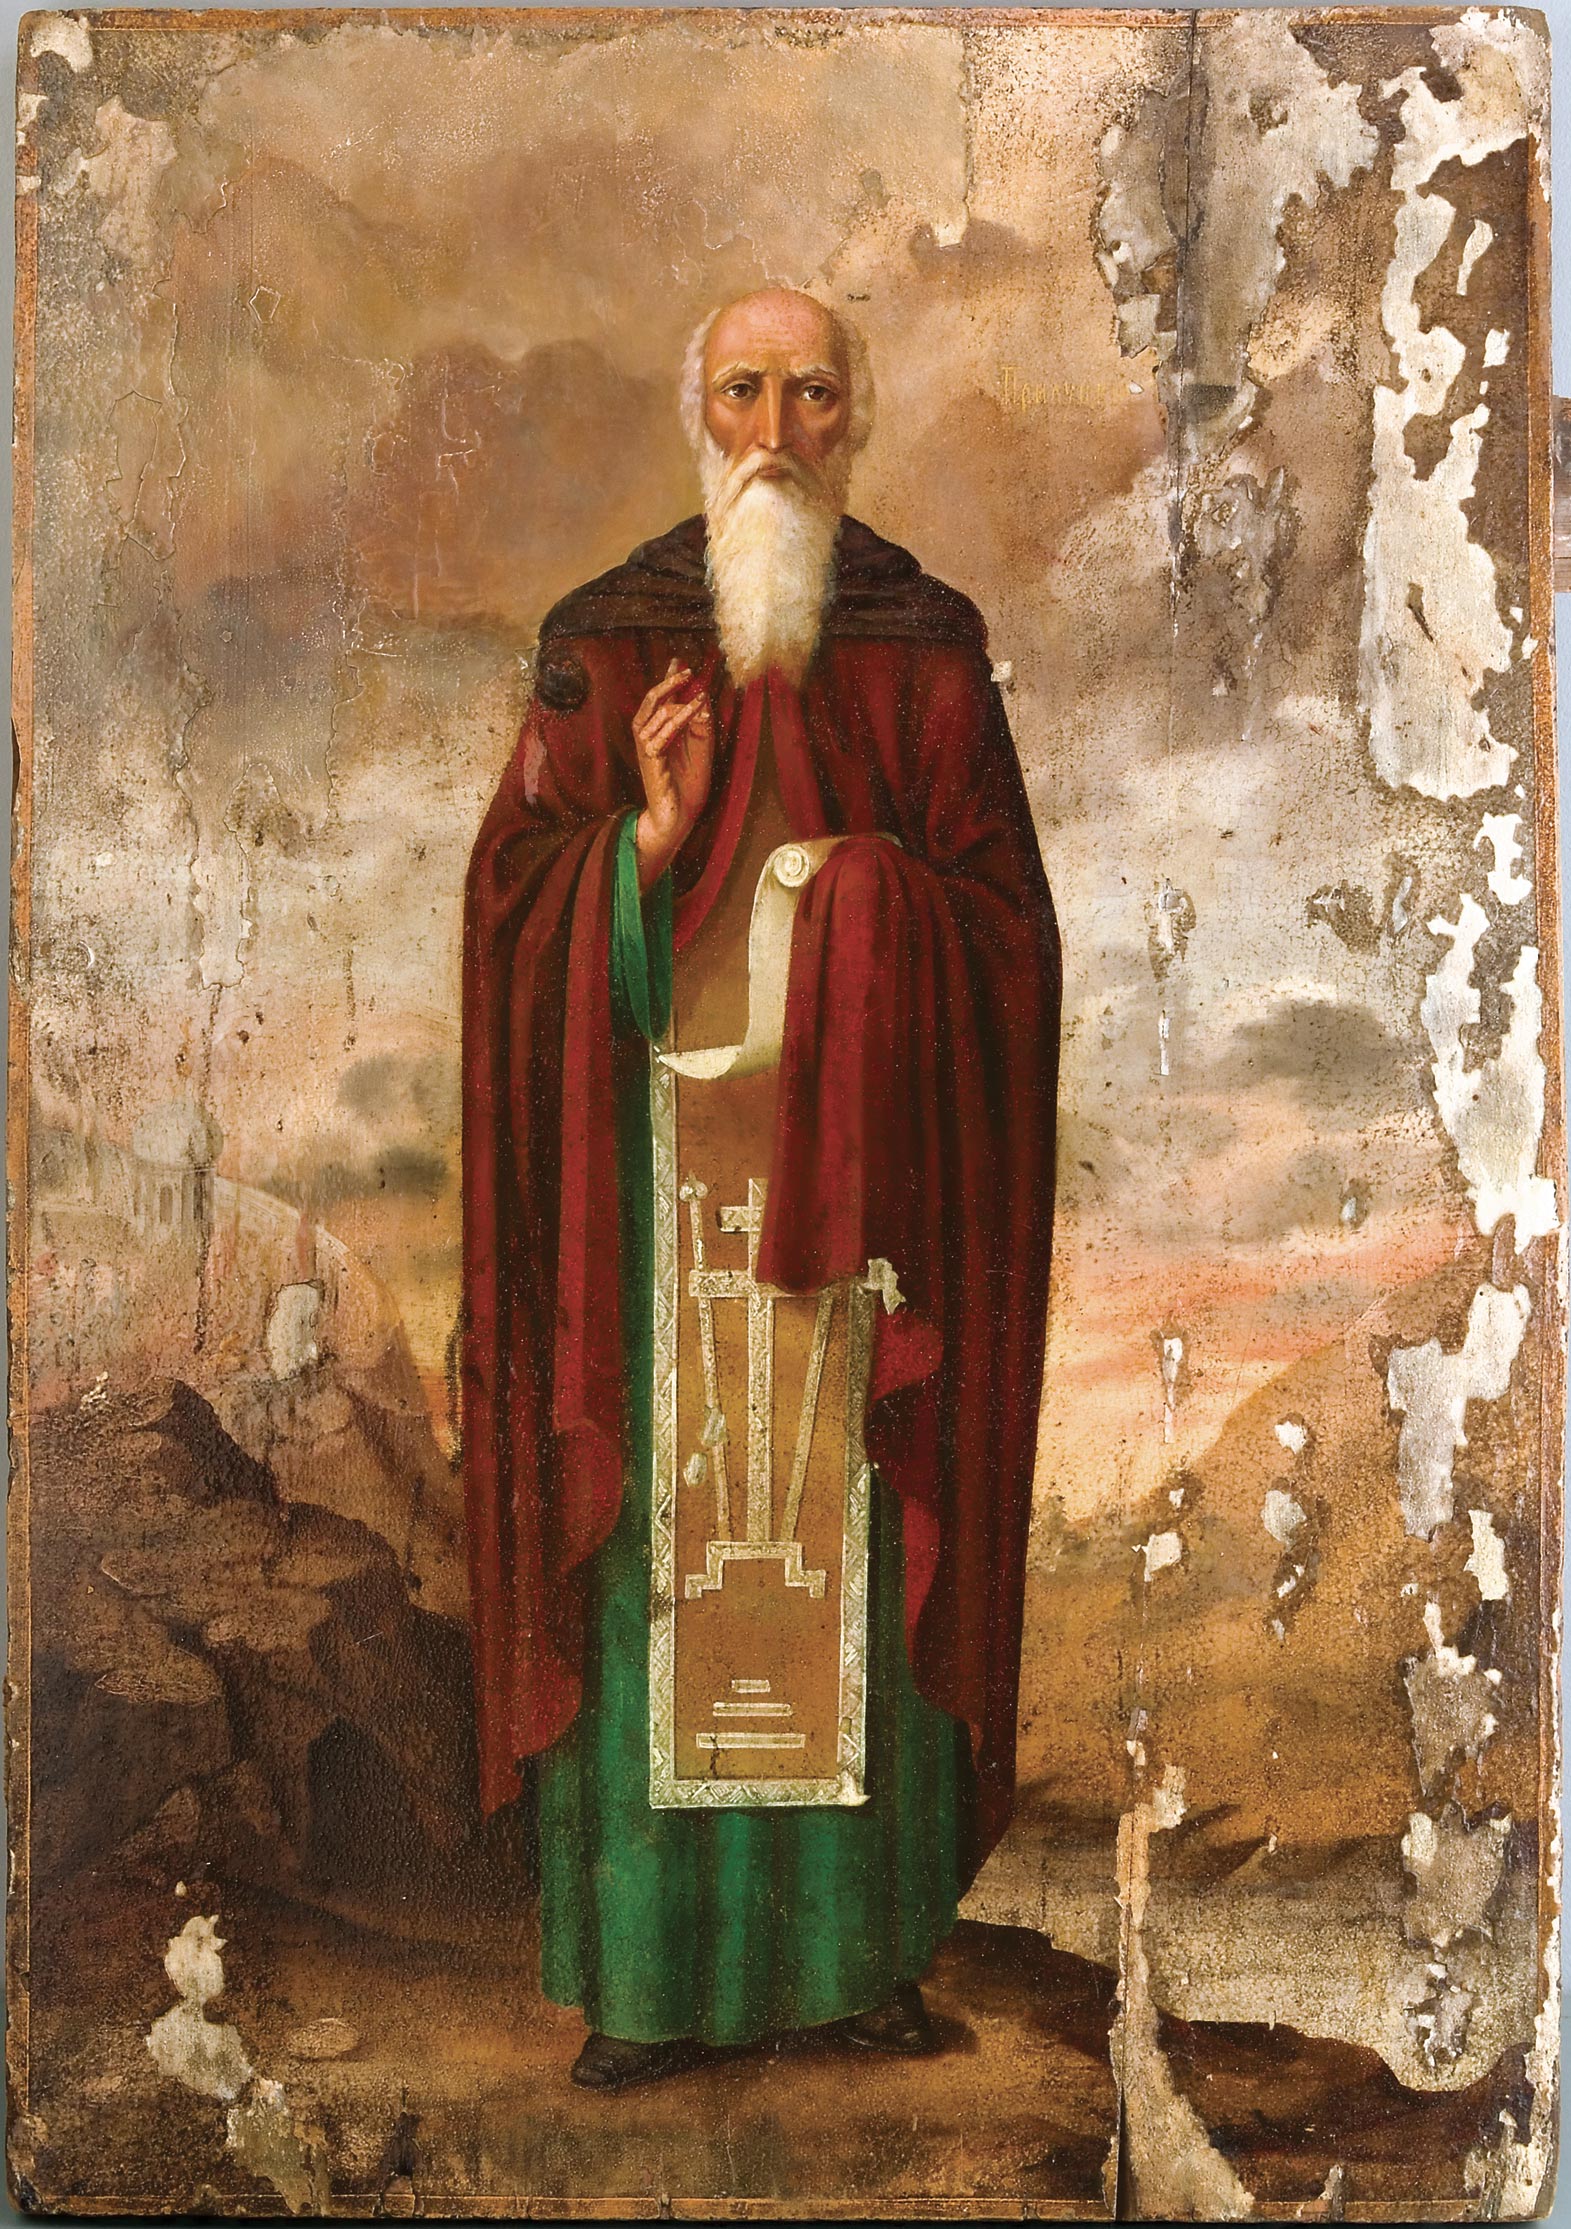 Преподобный Димитрий Прилуцкий